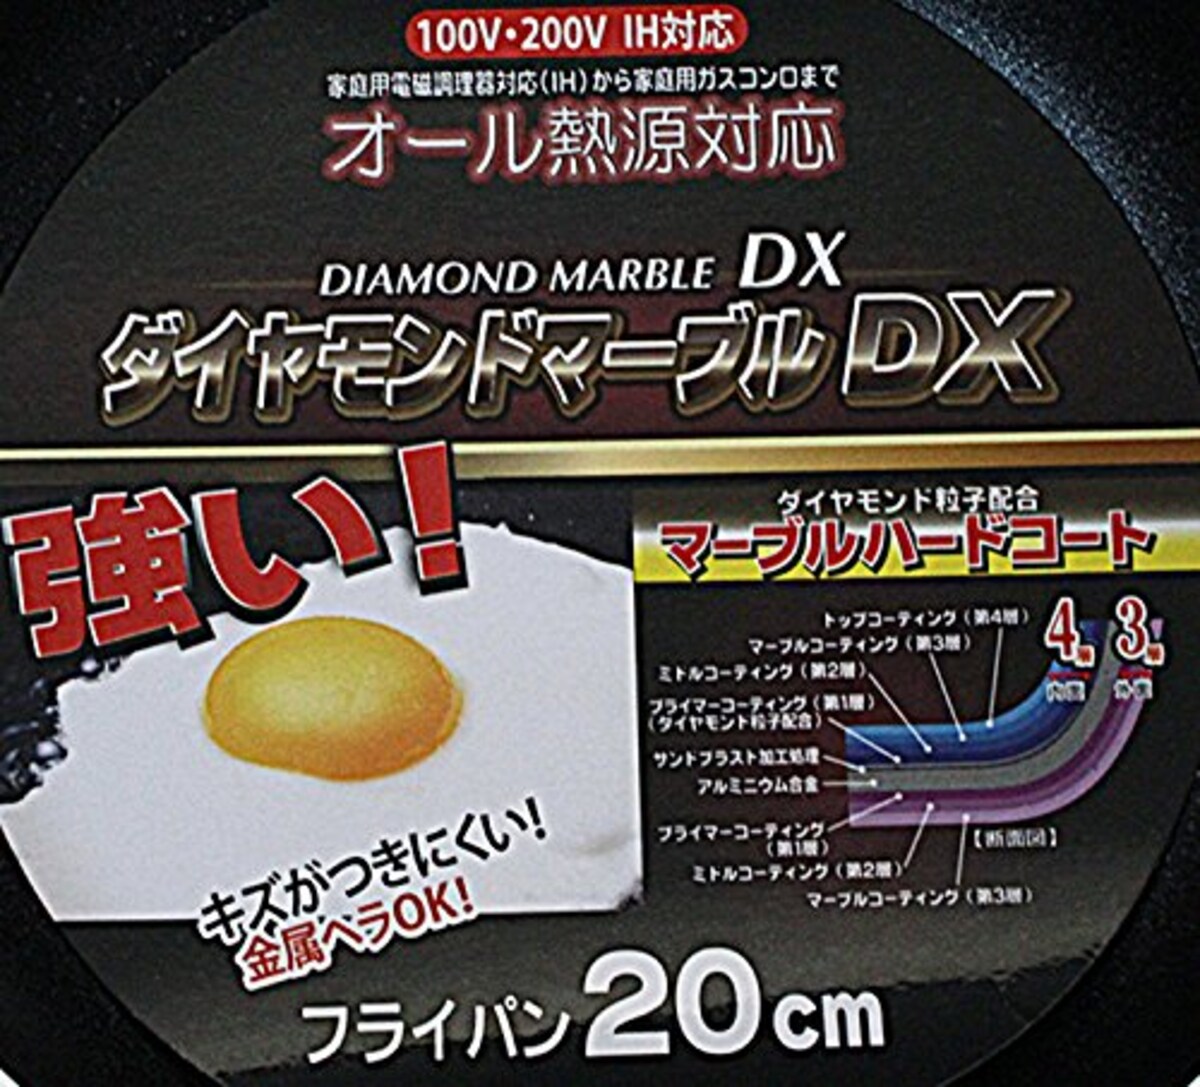  ナンセンジャパン フライパン ダイヤモンドマーブルDX 20cm IH対応 ブラック画像3 